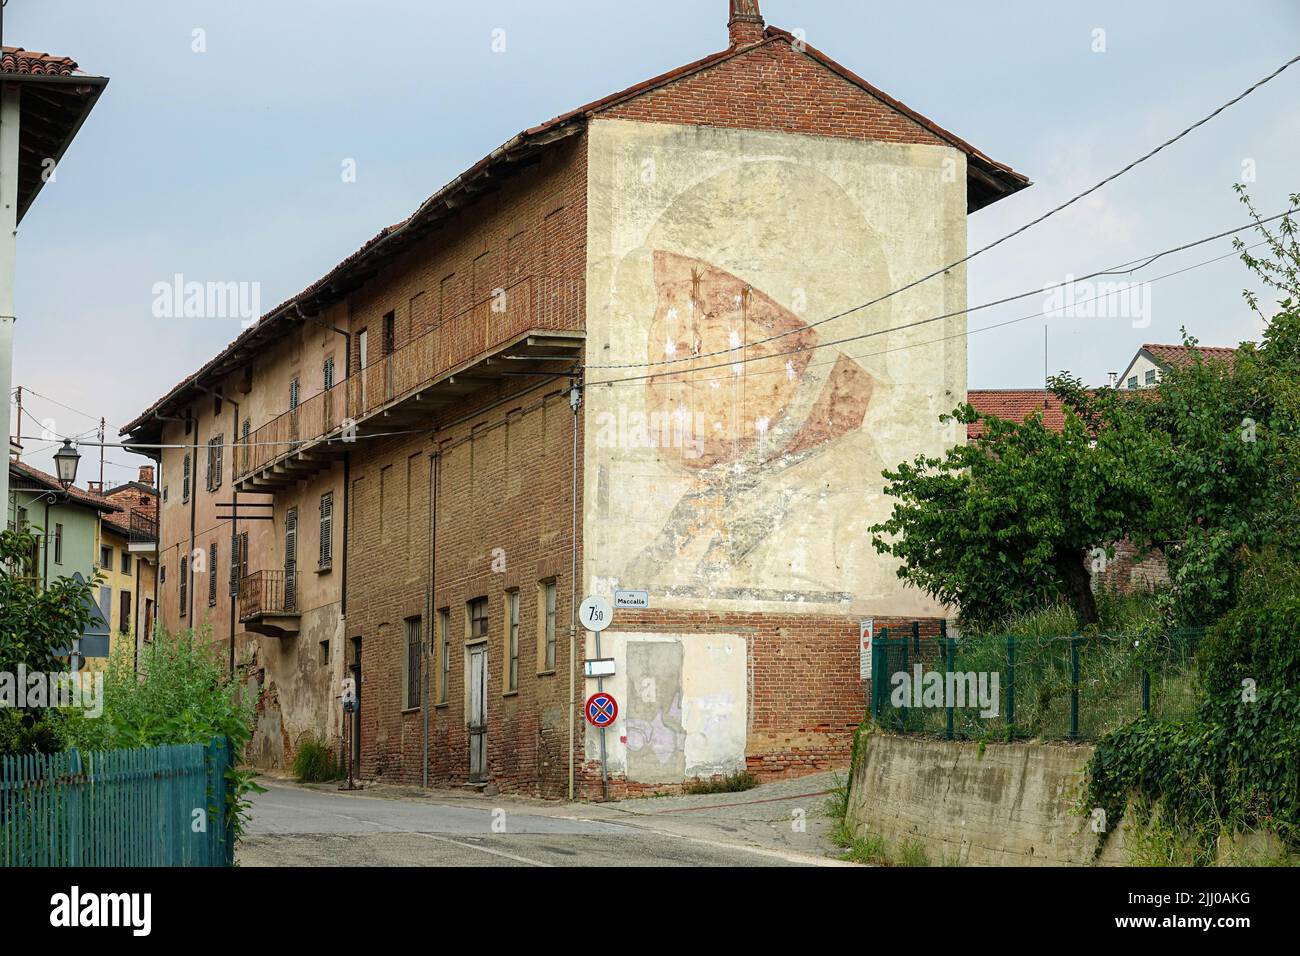 Retrato gigante de Benito Mussolini hecho en 1936 todavía visible en la fachada lateral de un edificio. Montà d'Alba, Italia - Julio de 2022 Foto de stock